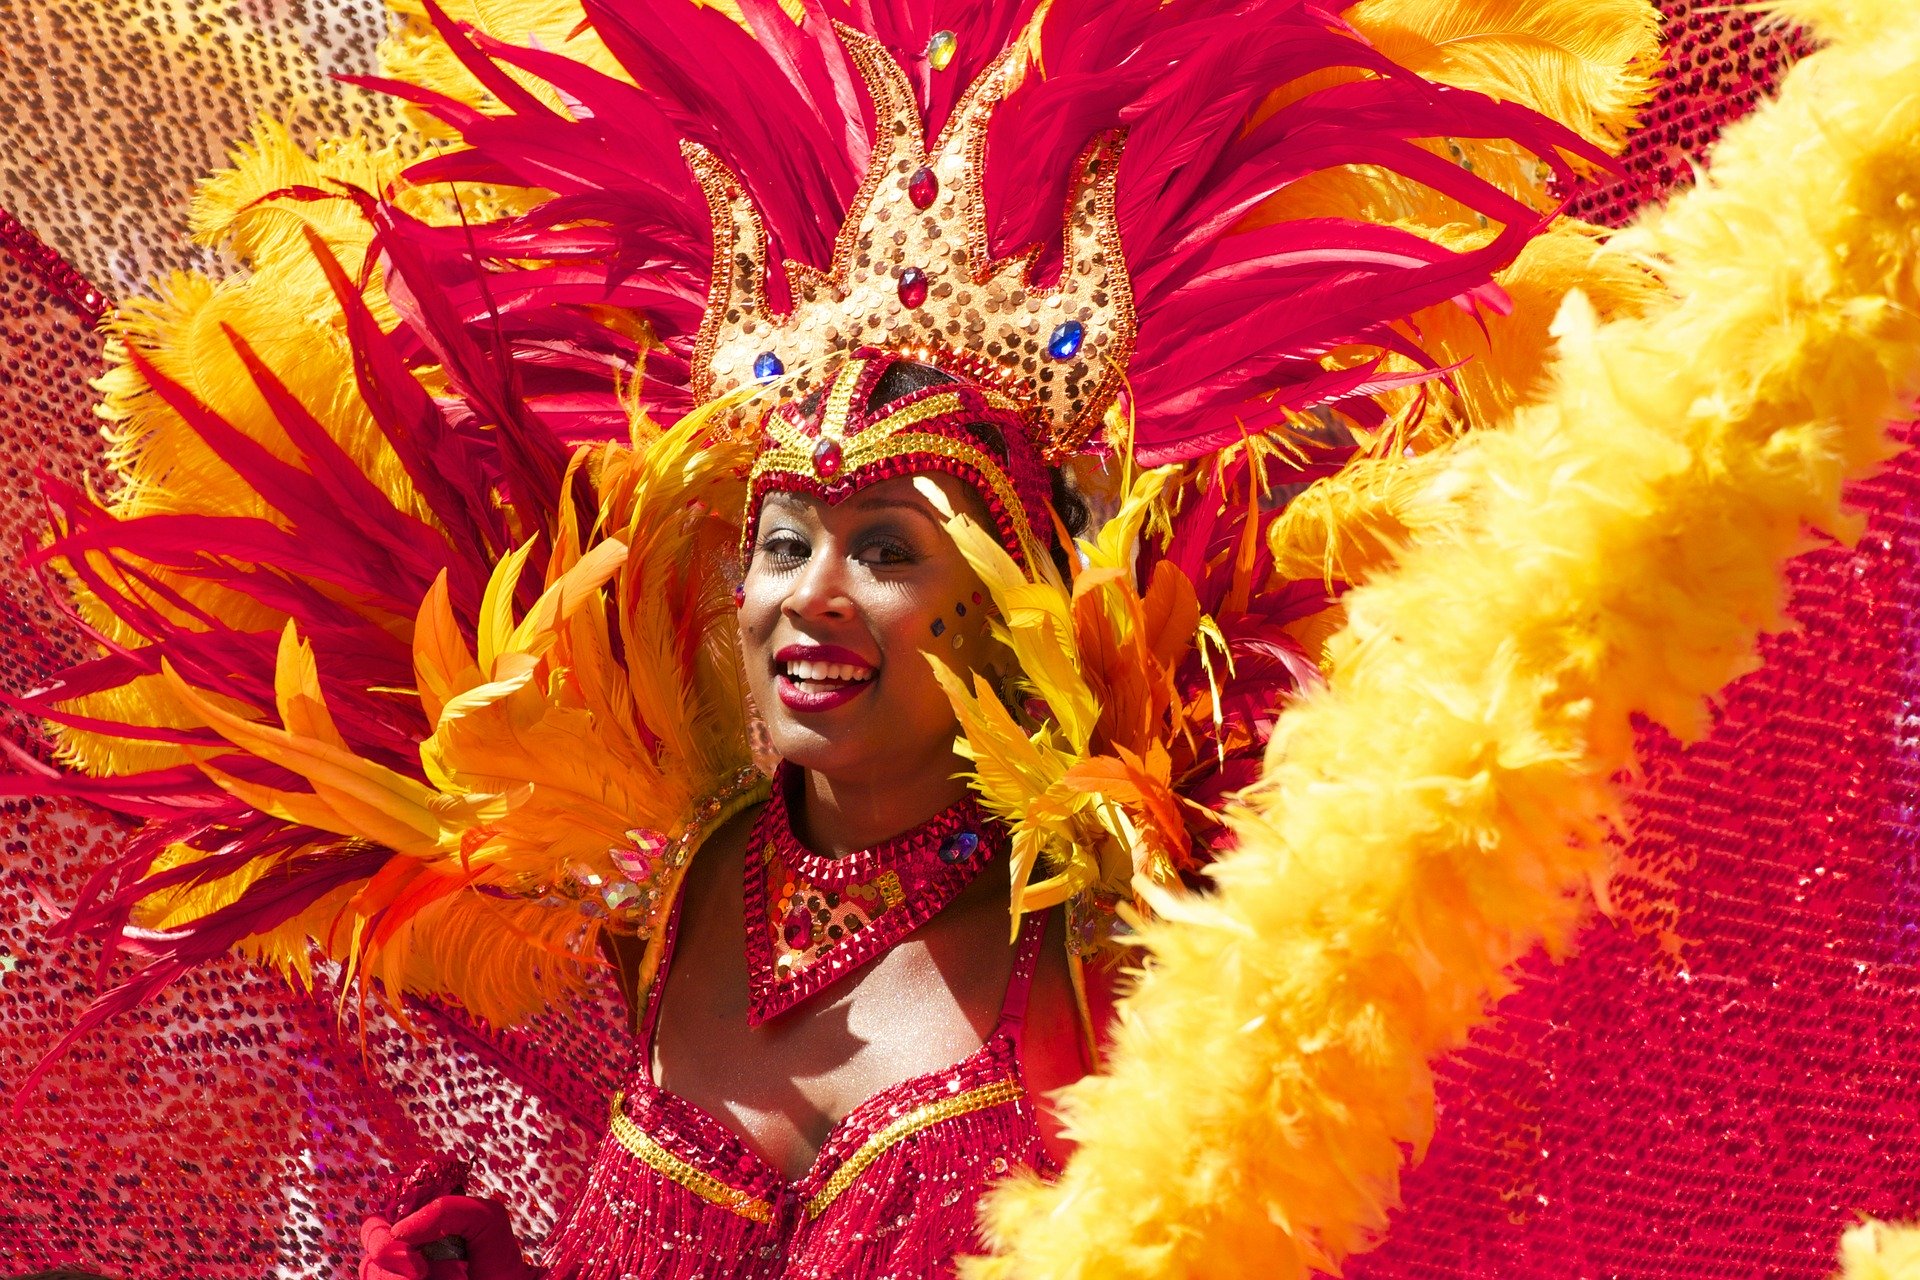 História do Carnaval